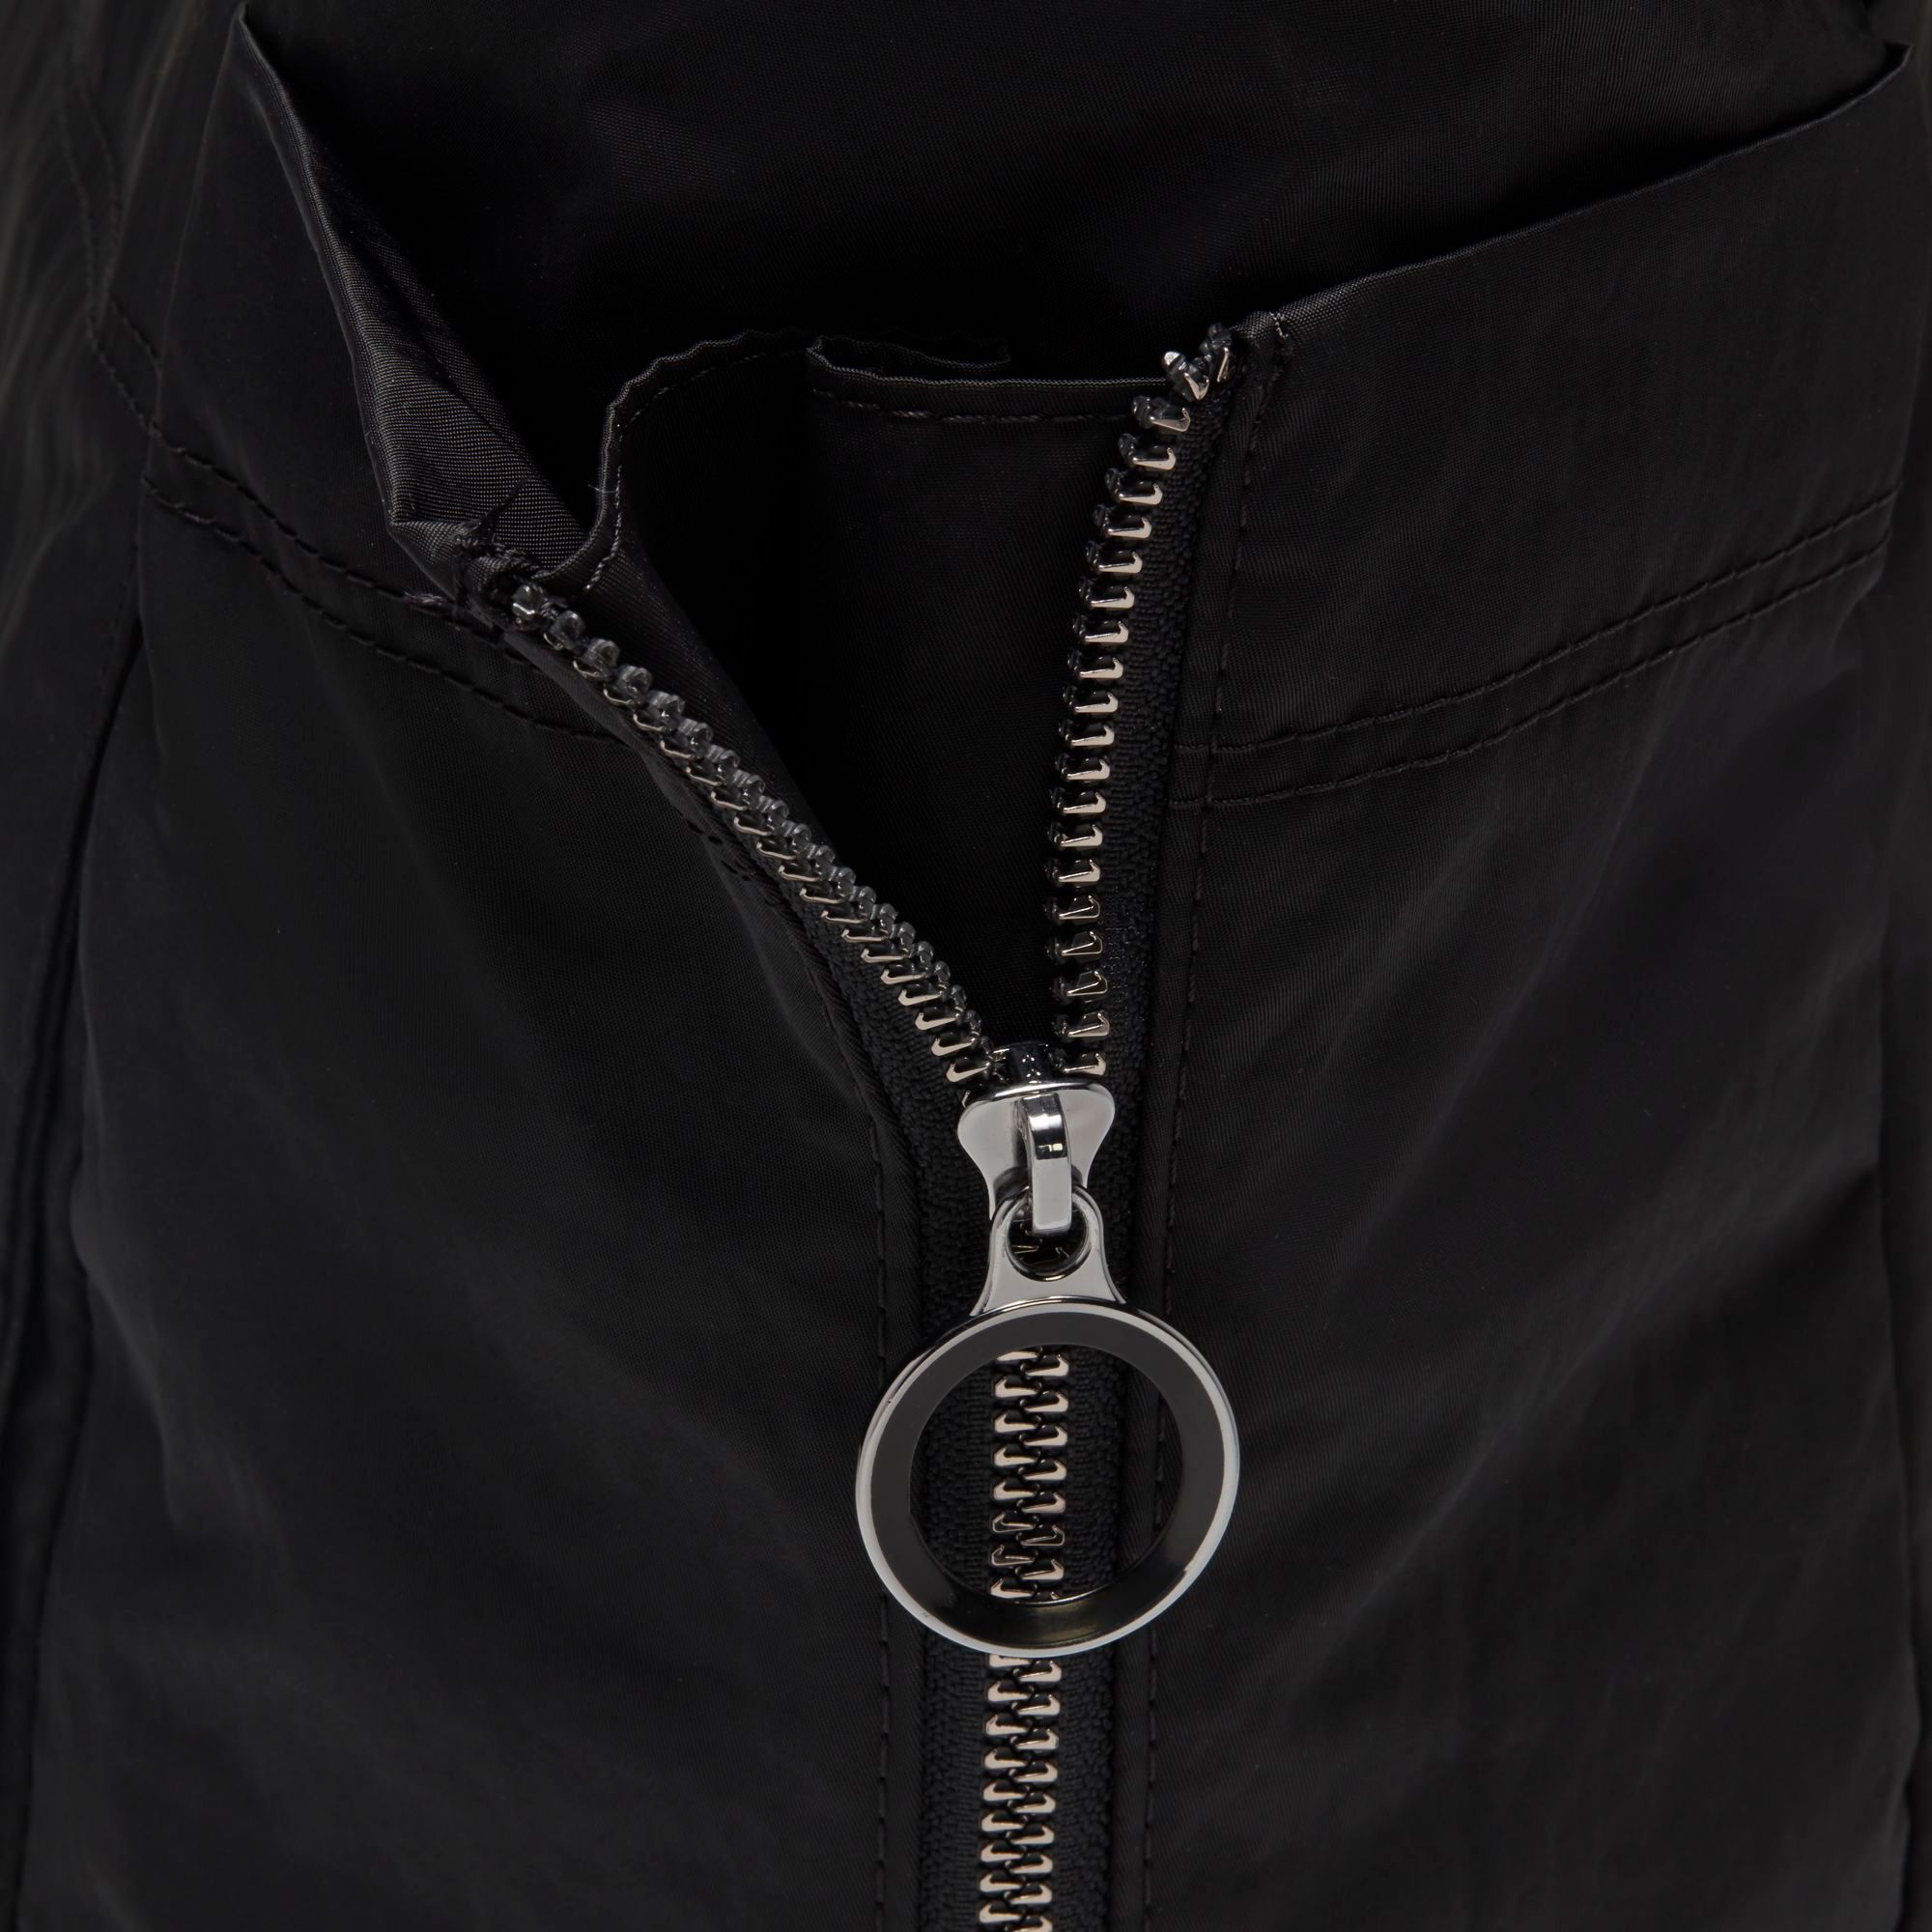 The Nike one luxe backpack is a 10/10 #nike #teamnike #nikebackpack #t, nike  one luxe bag